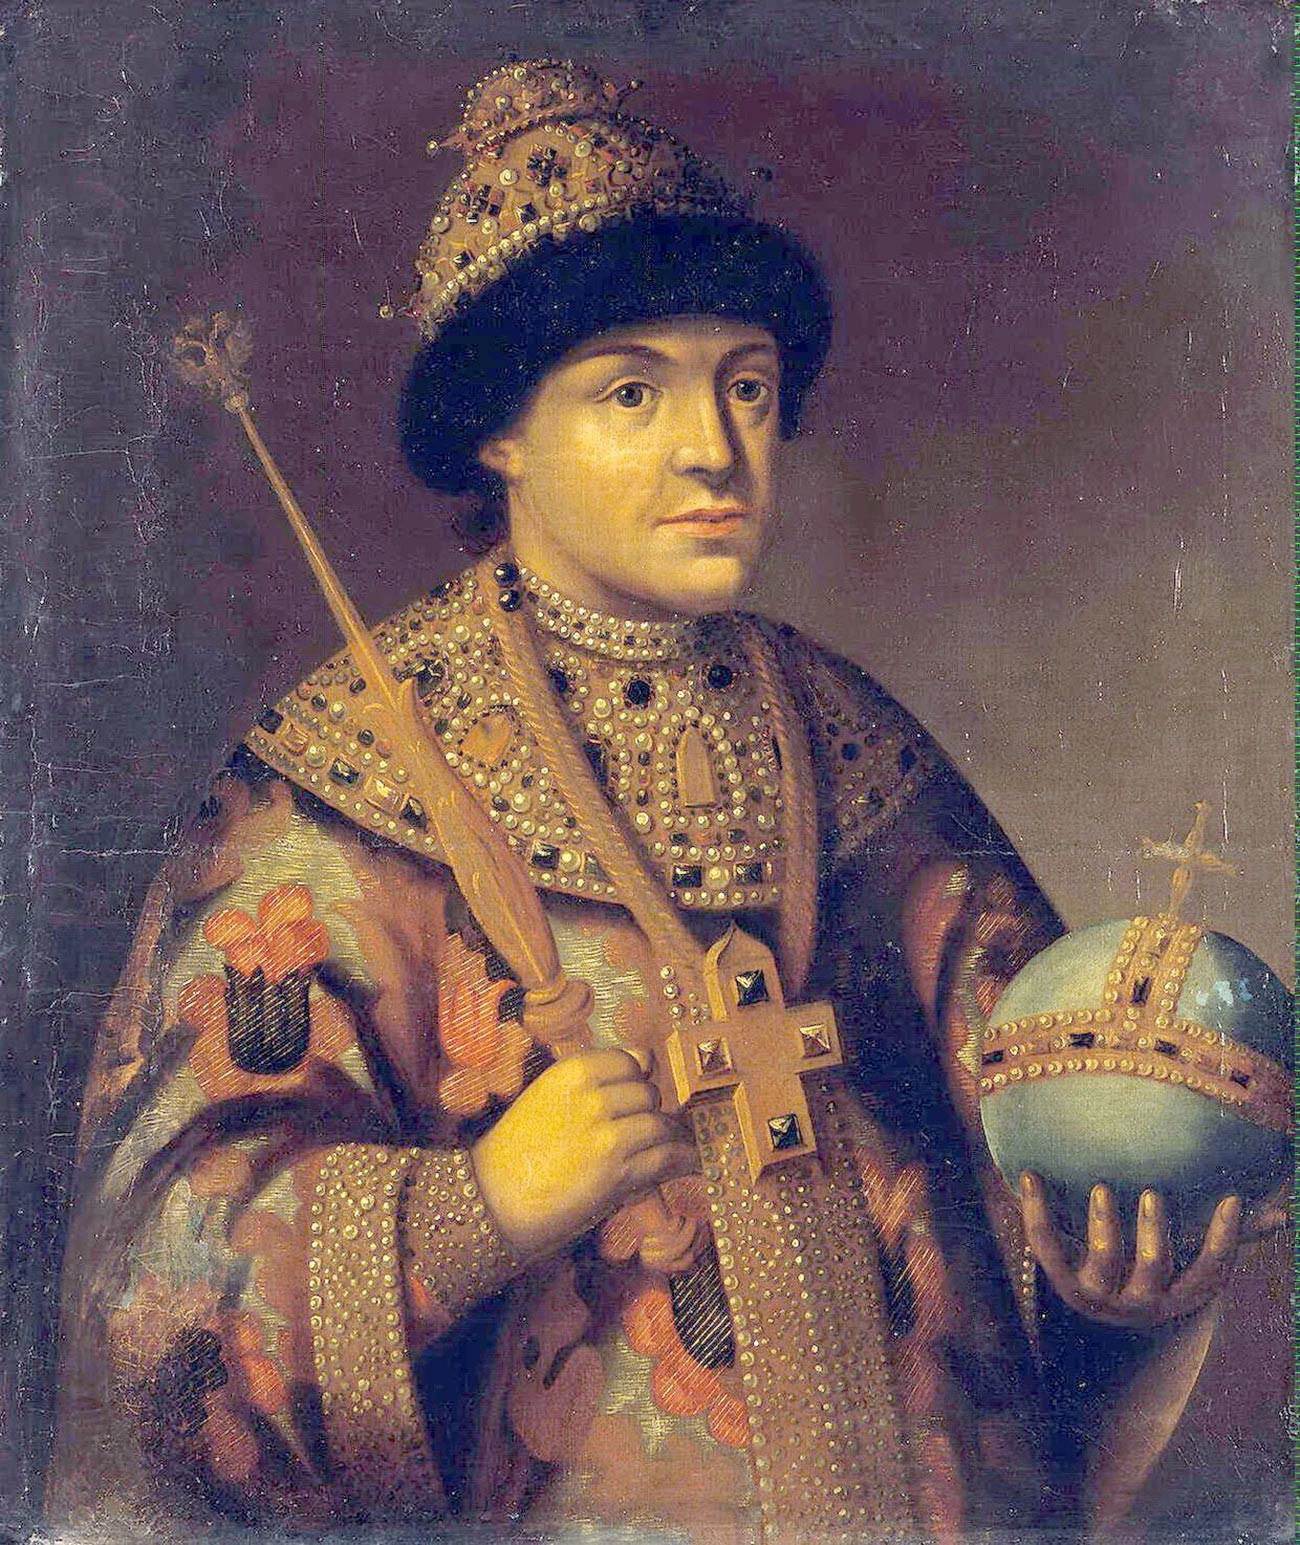 Царь Фёдор Алексеевич (1661-1682). Его младший брат Иван Алексеевич (1666-1696), возможно, был слаб умом.